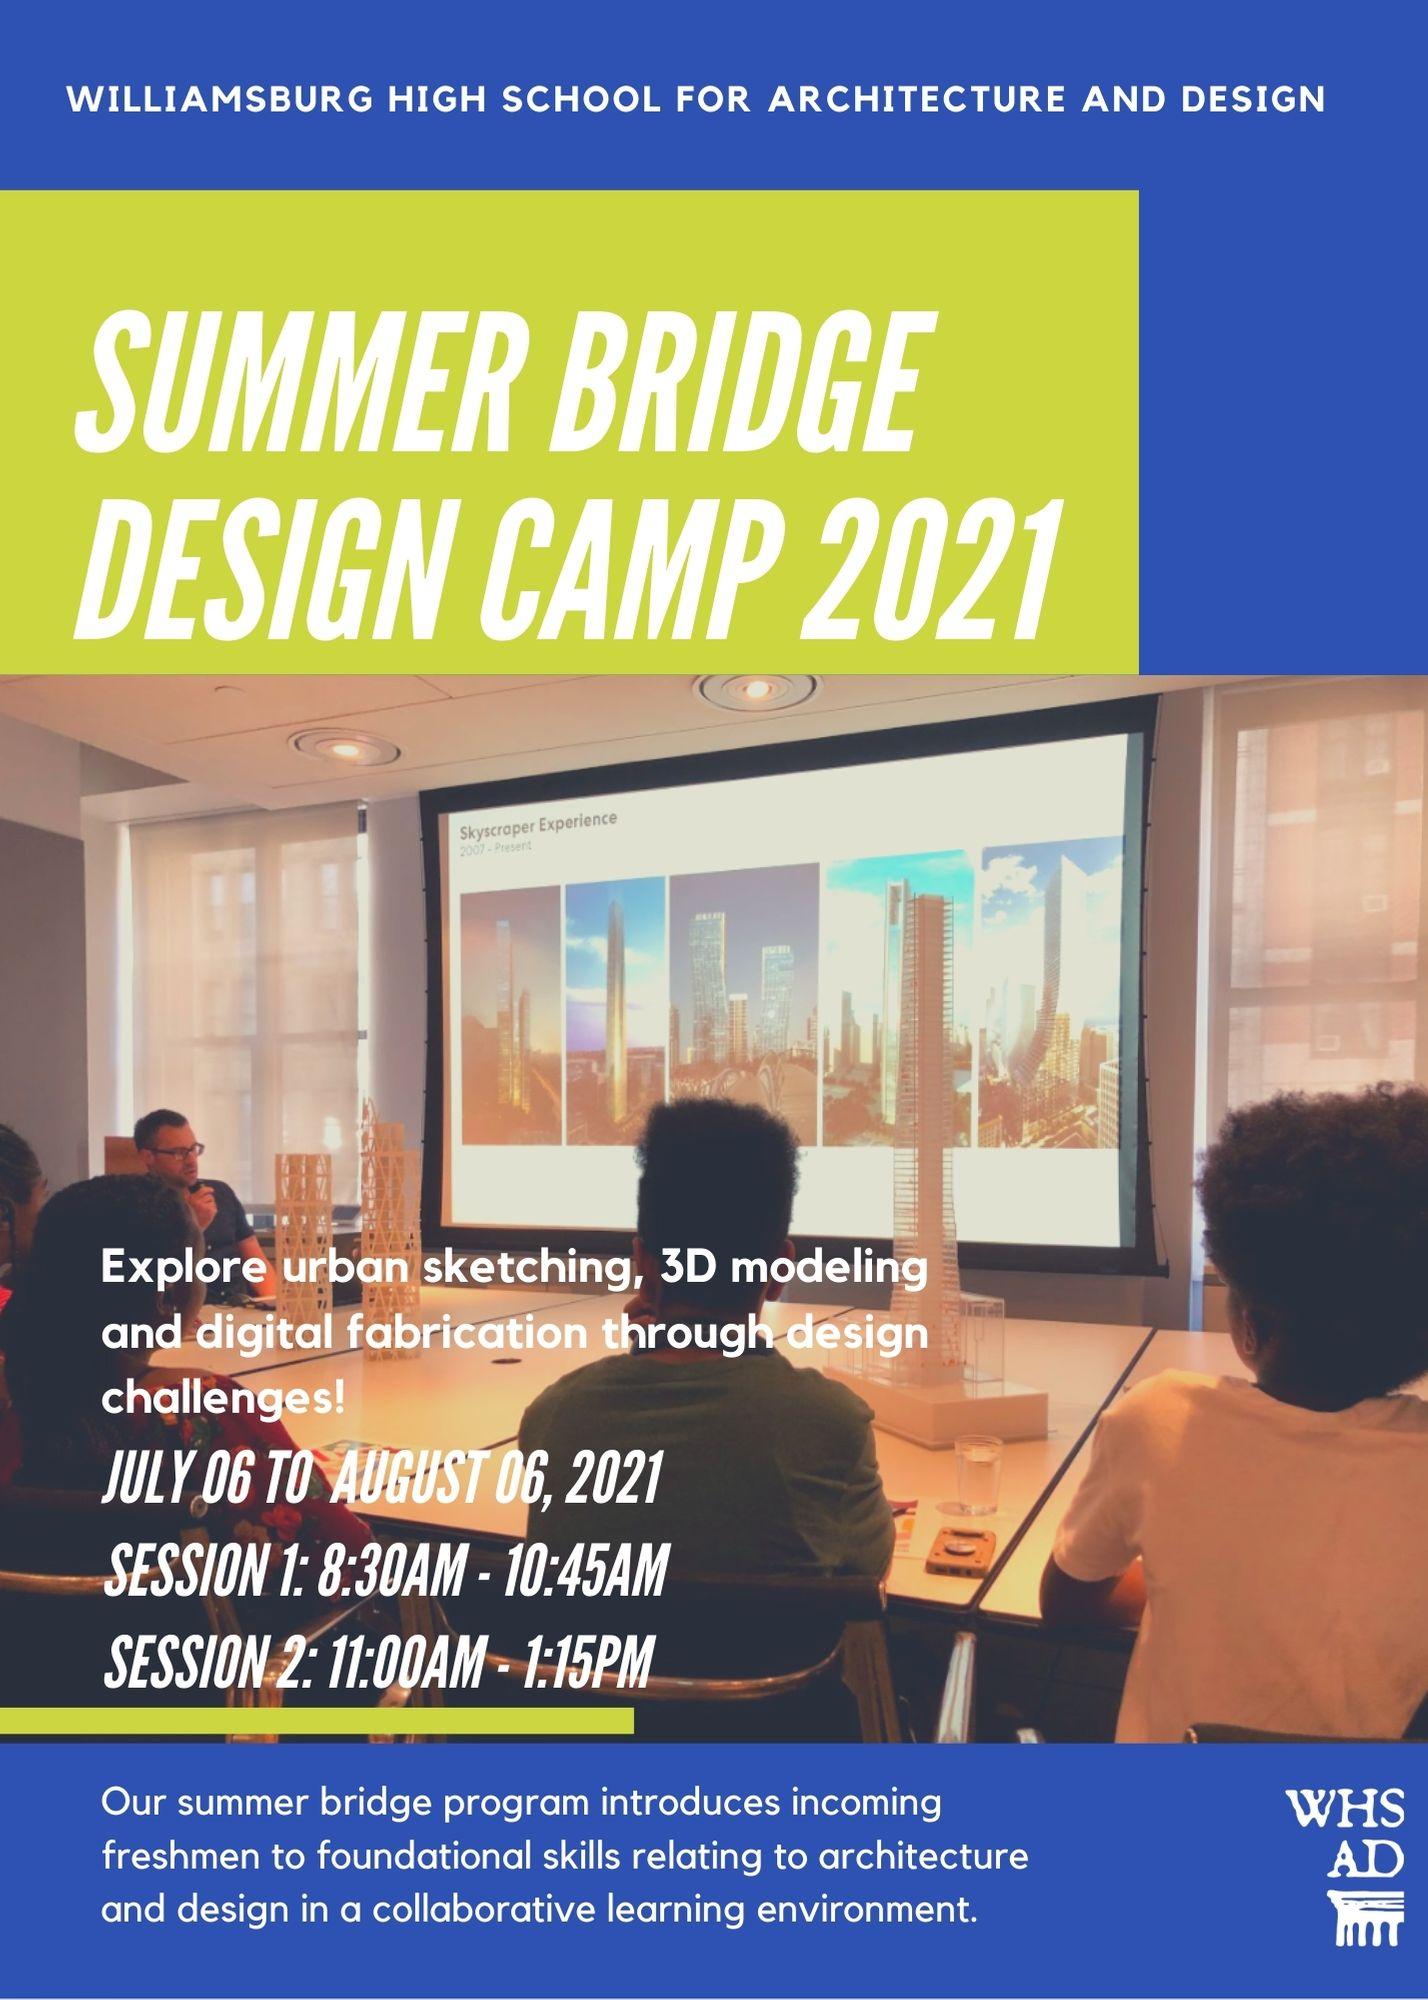 WHSAD Summer Bridge Design Camp 2021